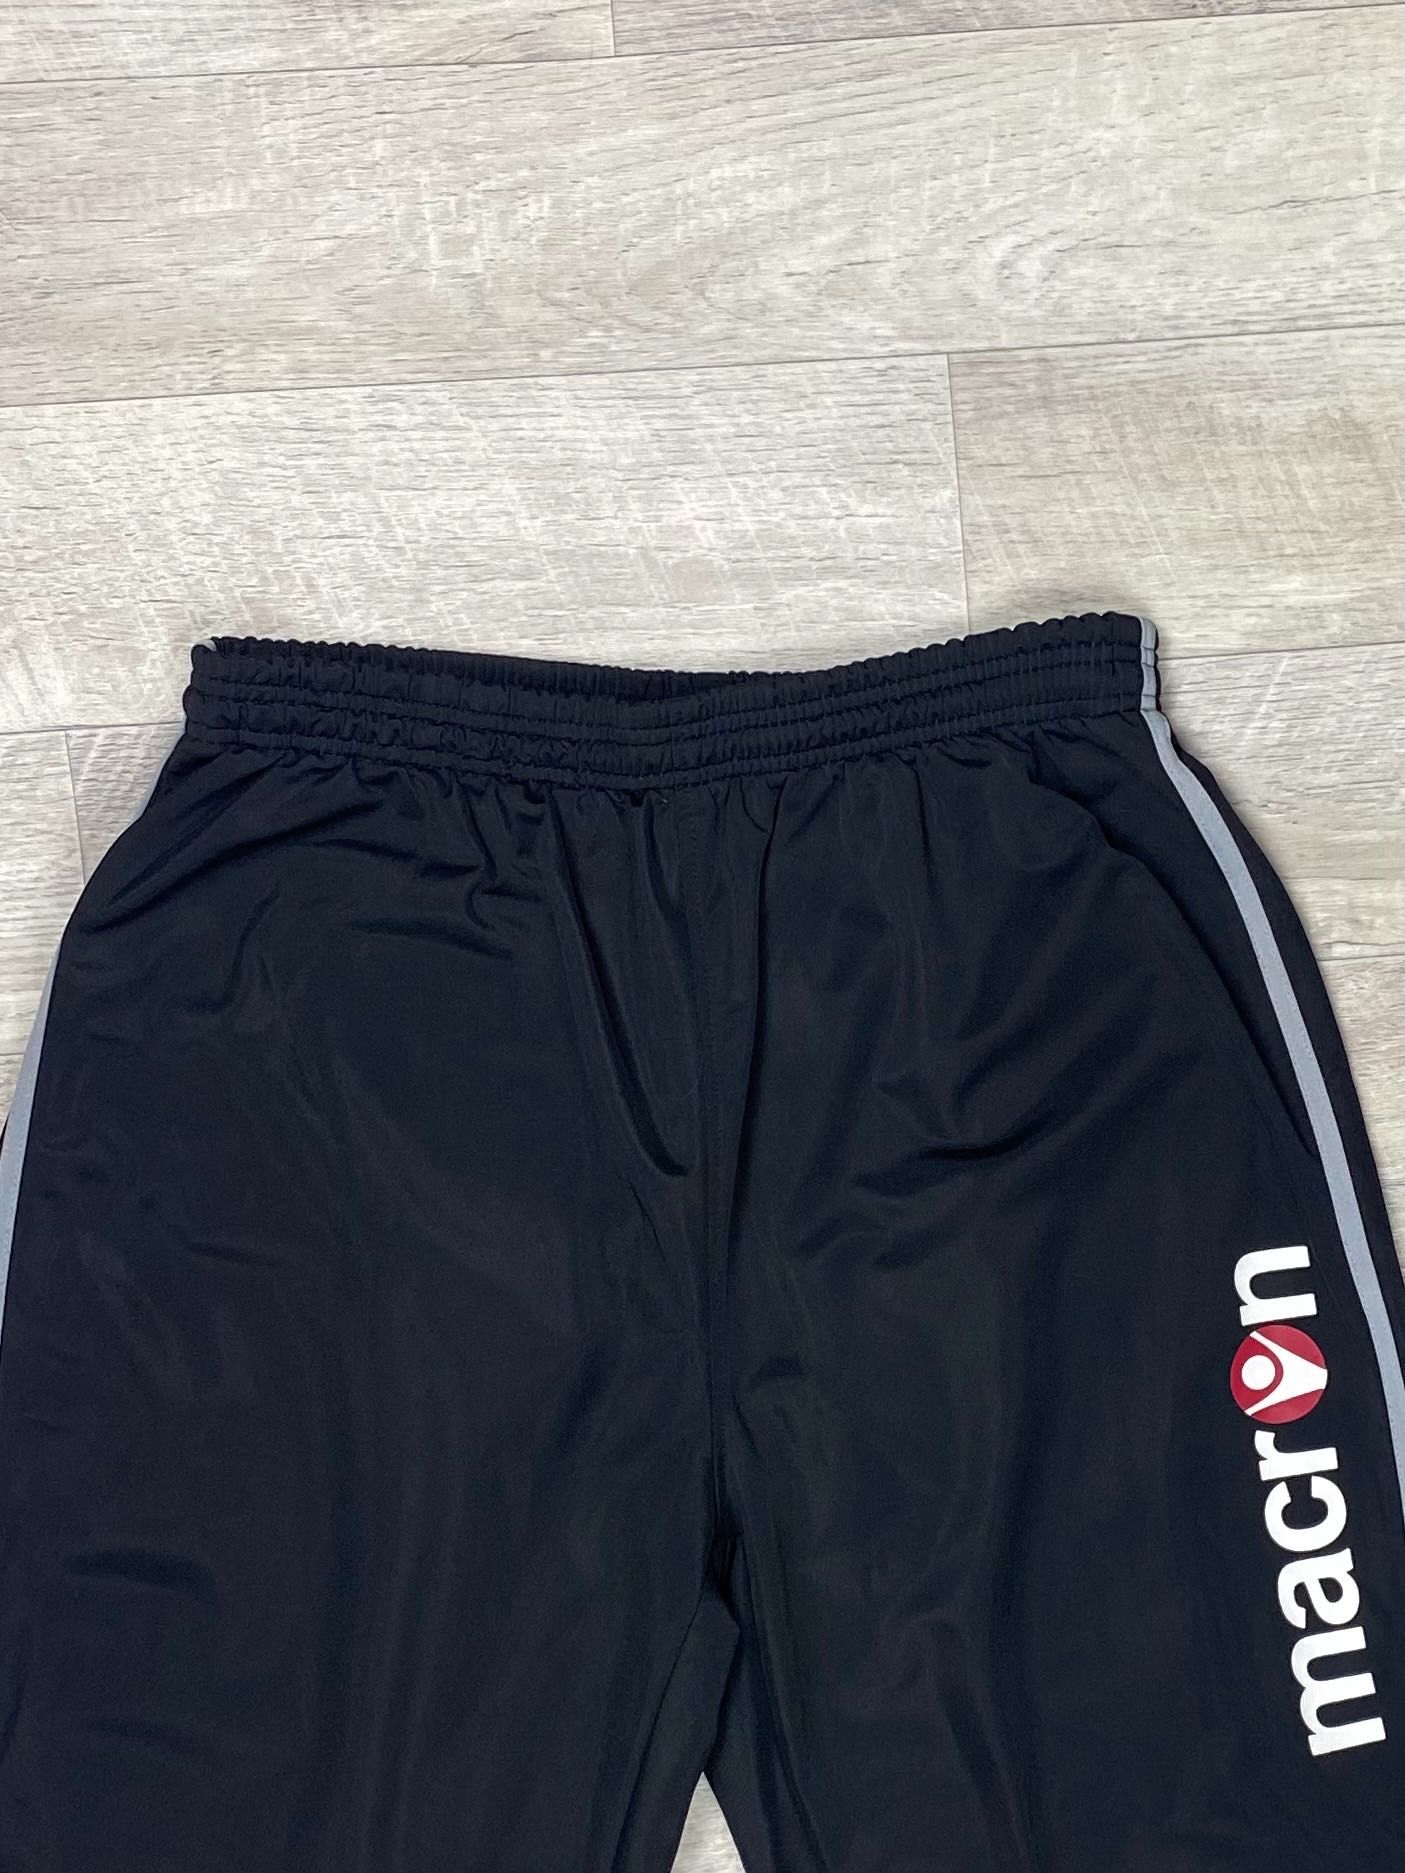 Macron штаны XL размер на манжете спортивные чёрные